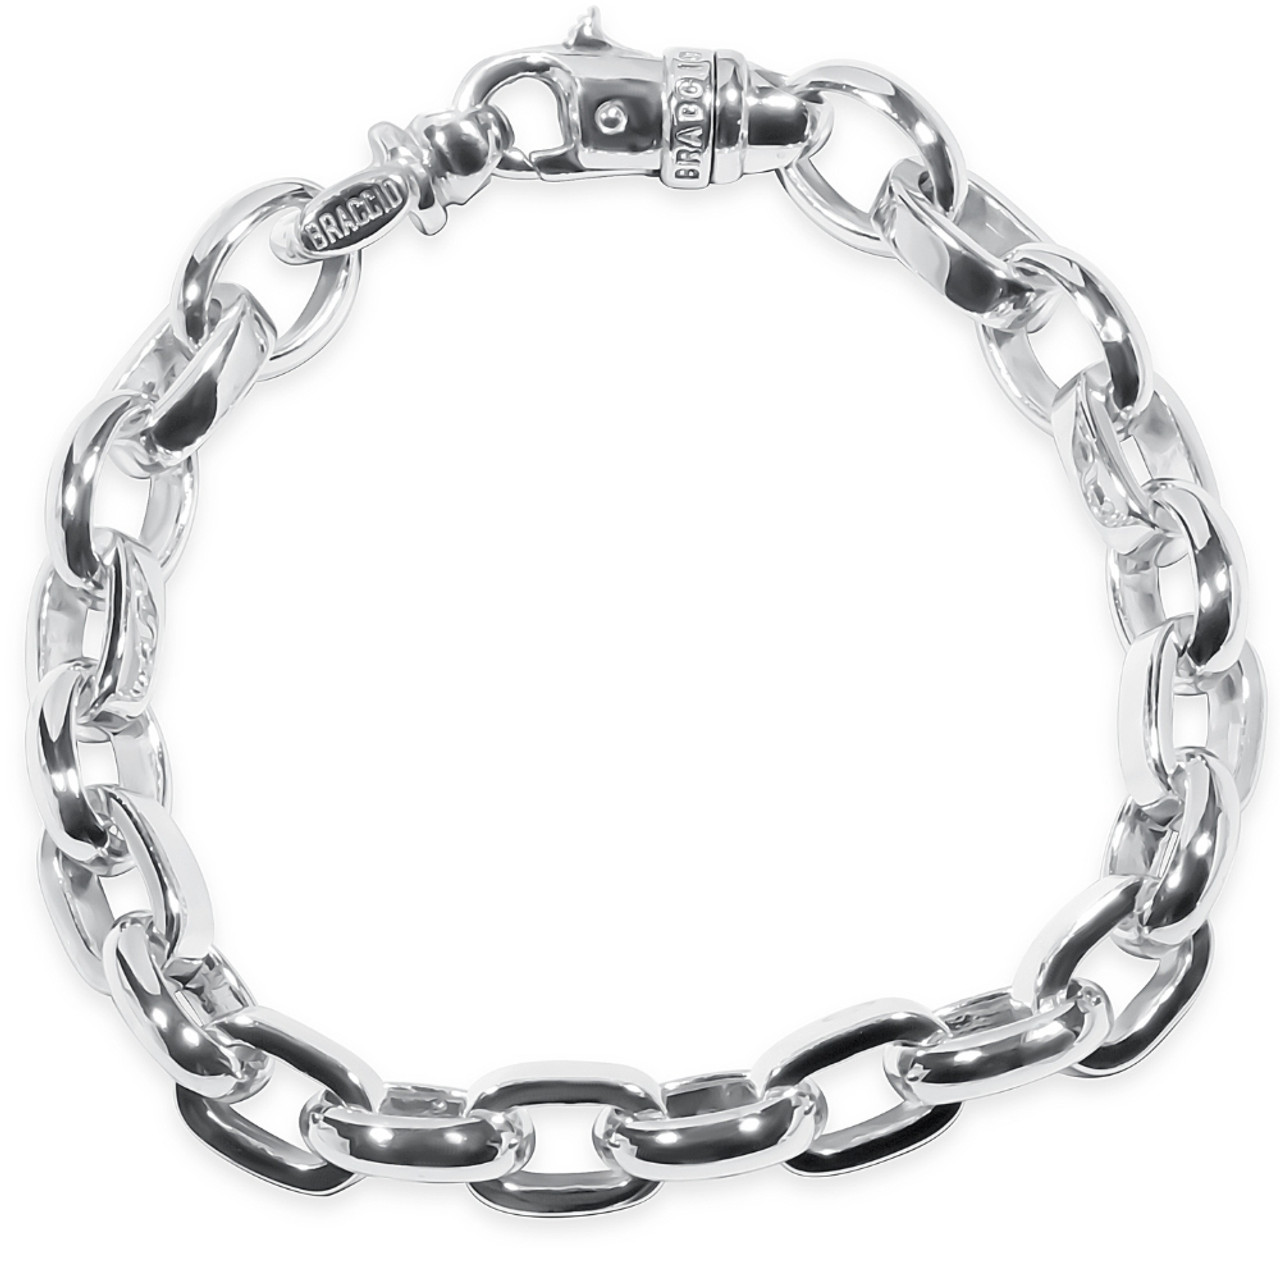 8.5 in Mens Sterling Silver Link Bracelet (11mm)